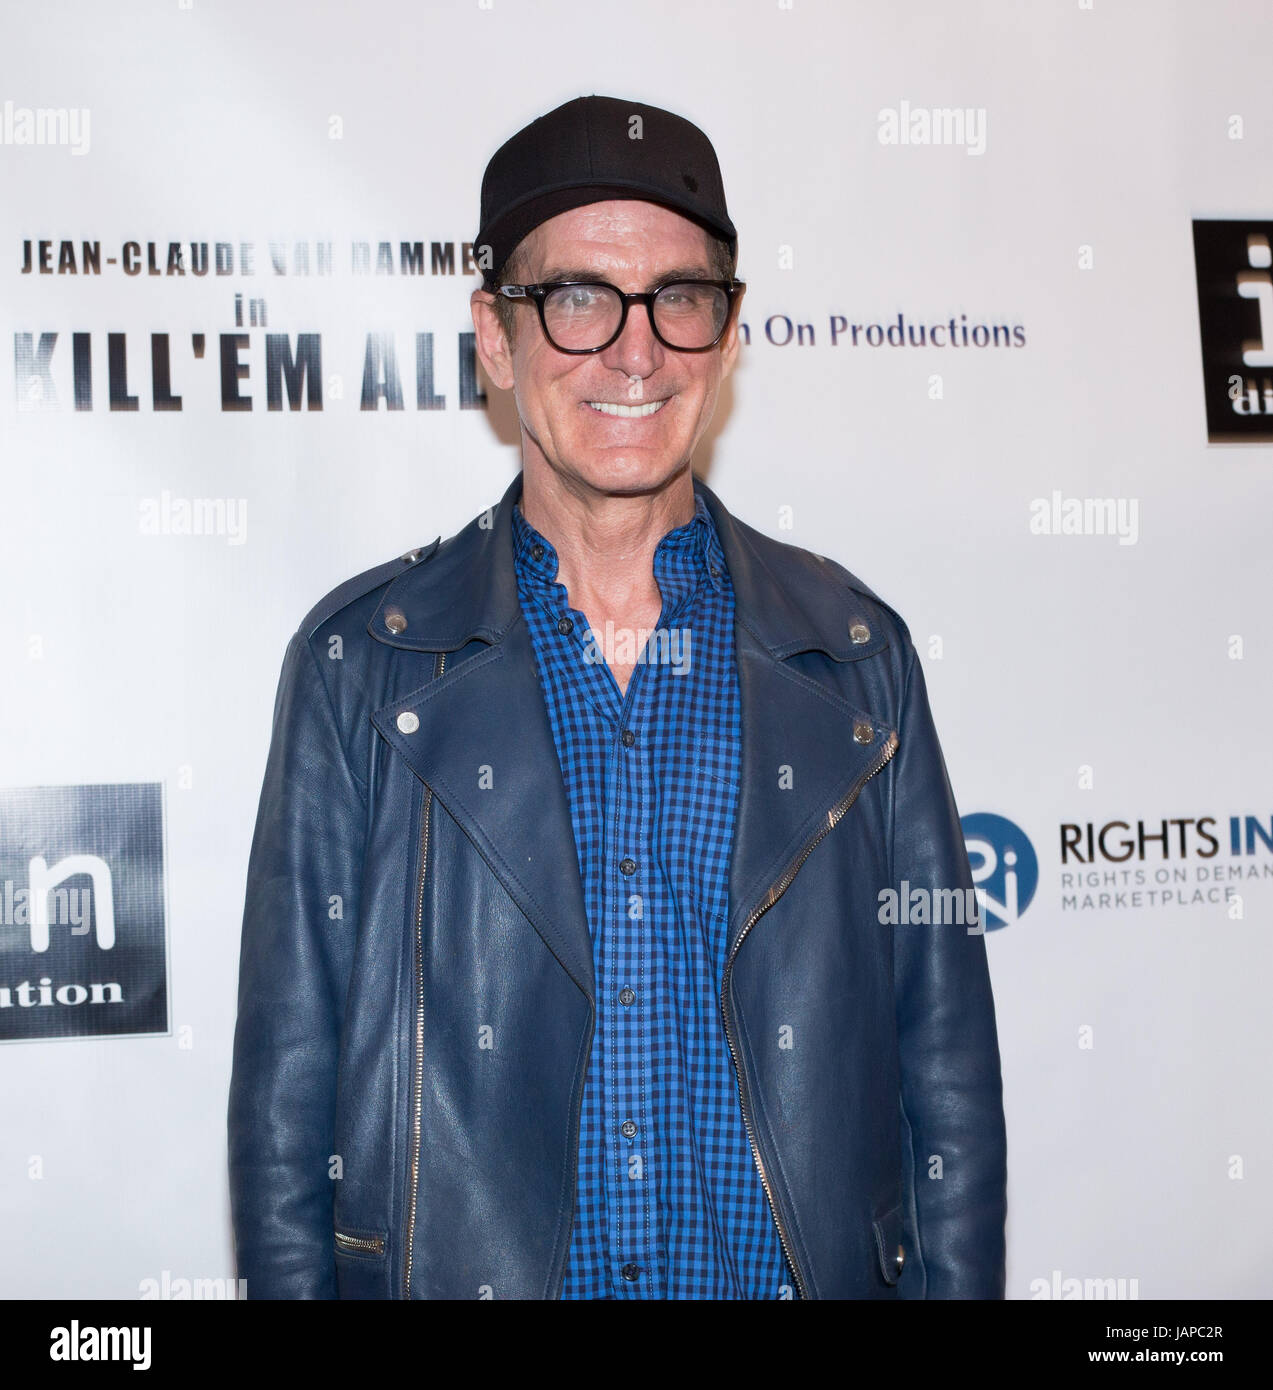 Felix McNulty besucht die Premiere von Destination Filmen "Kill Em All" bei Harmony Gold am 6. Juni 2017 in Los Angeles, Kalifornien. Stockfoto